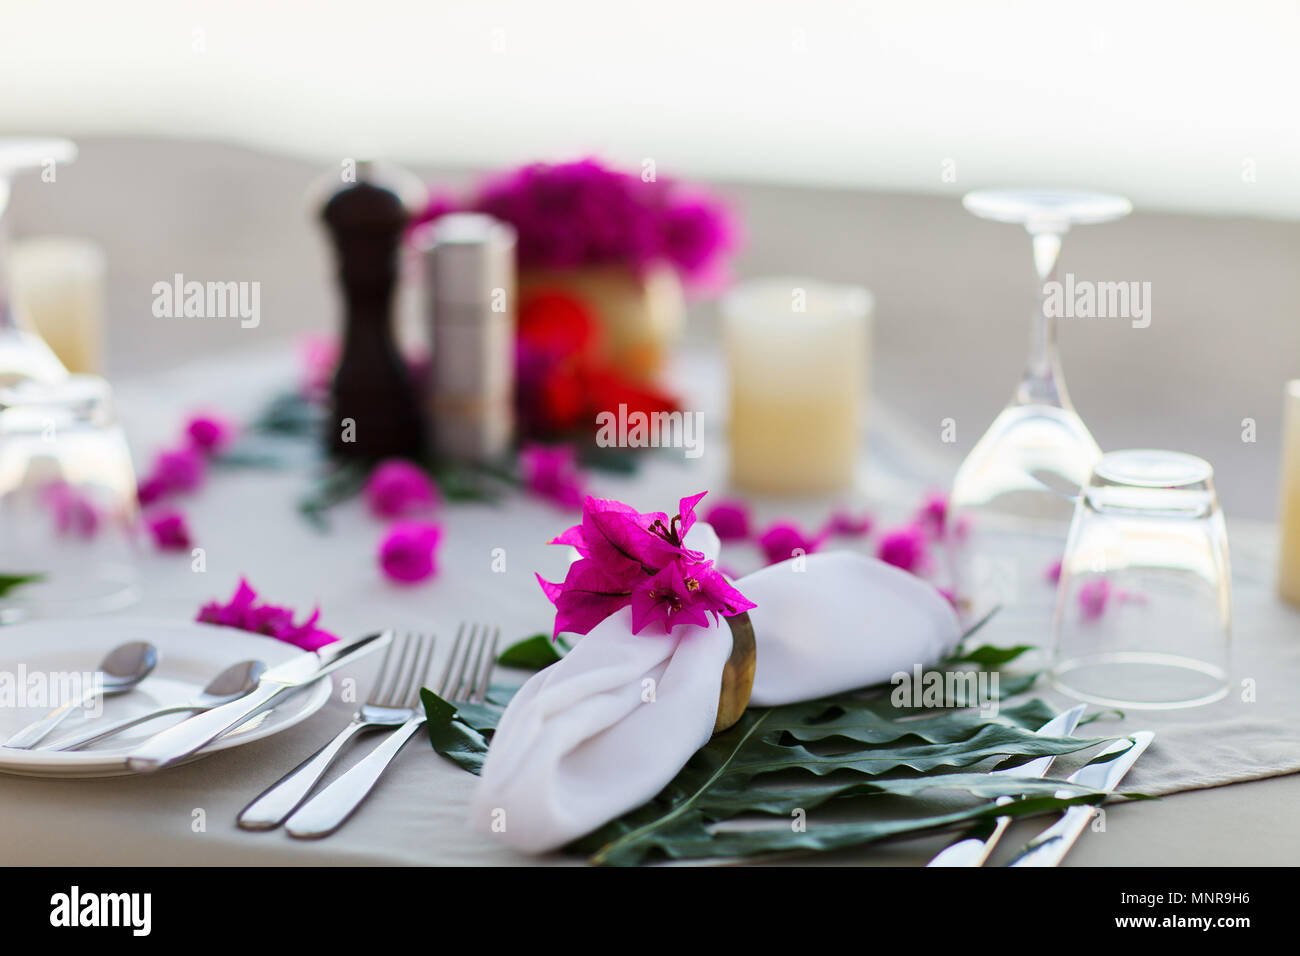 Schön serviert Tabelle für romantische Veranstaltung Feier oder Hochzeit Stockfoto